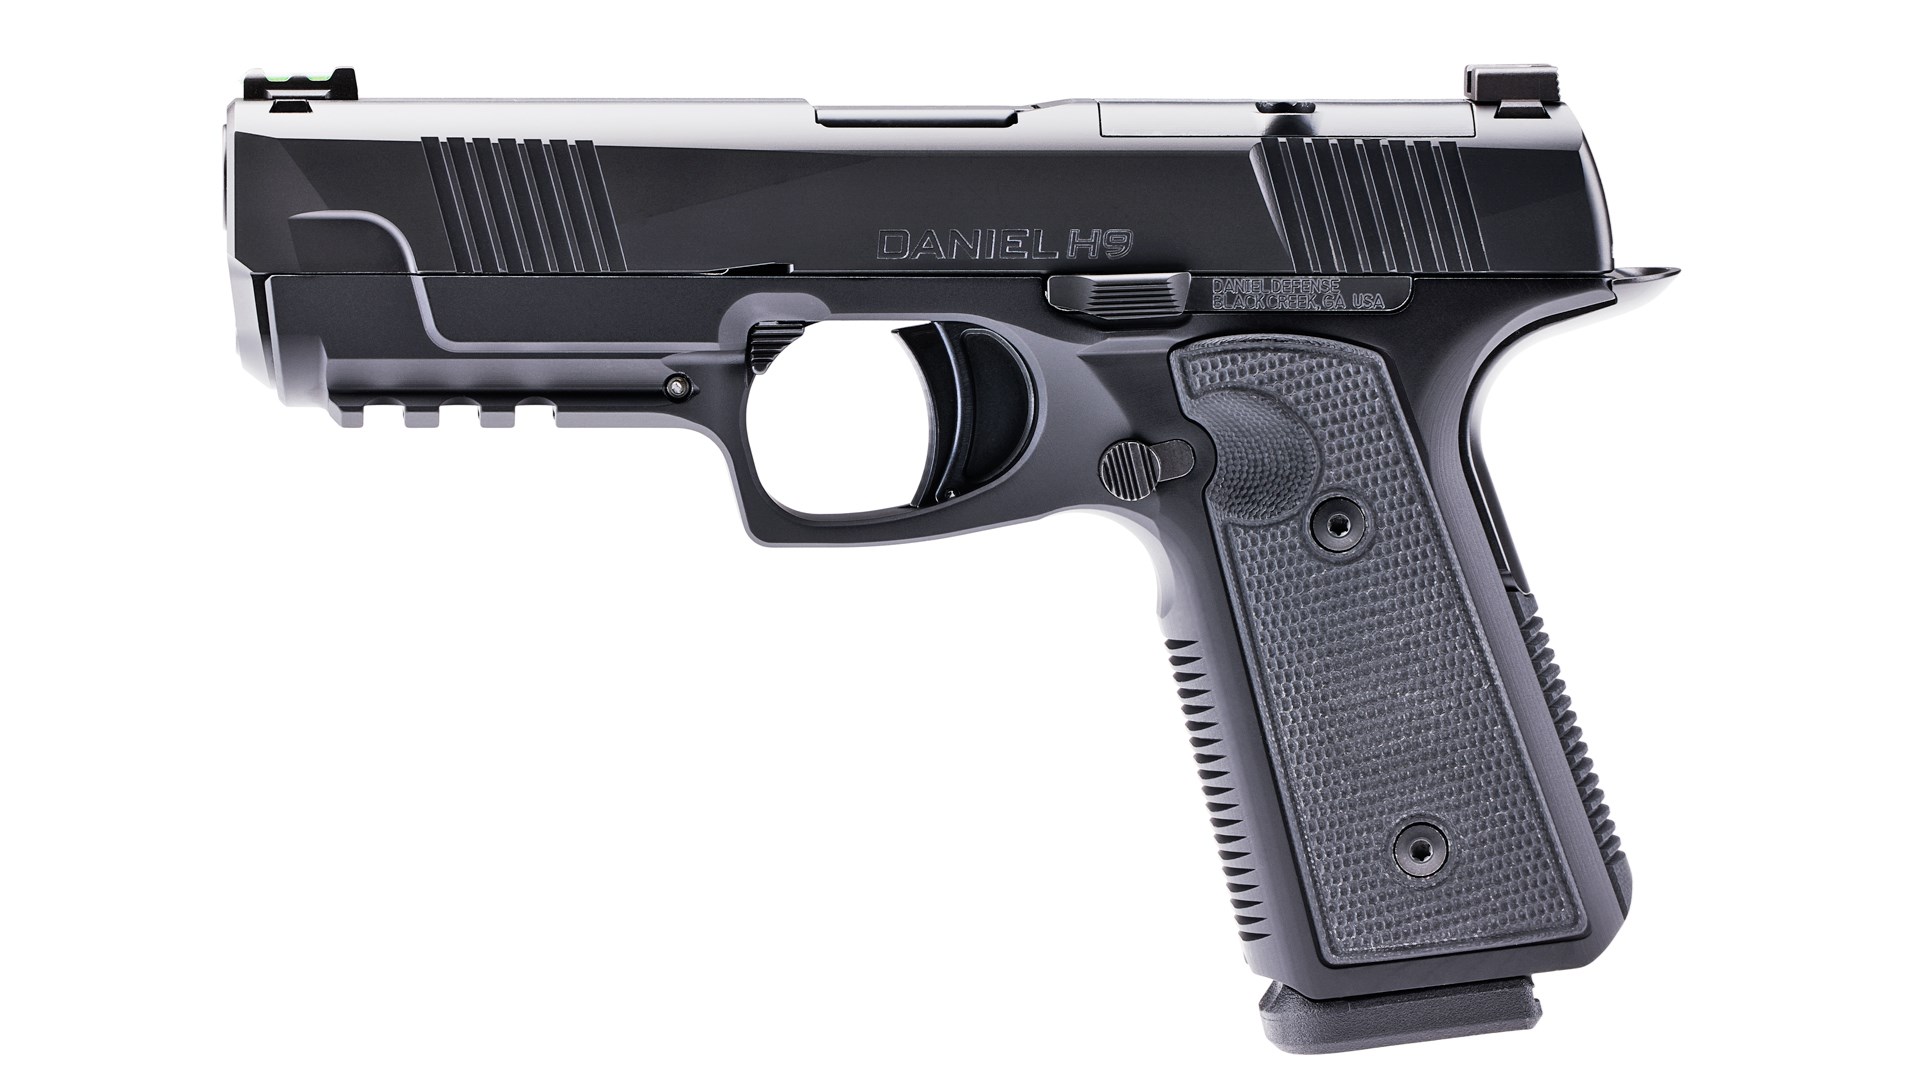 Left side of the Daniel Defense H9 pistol.